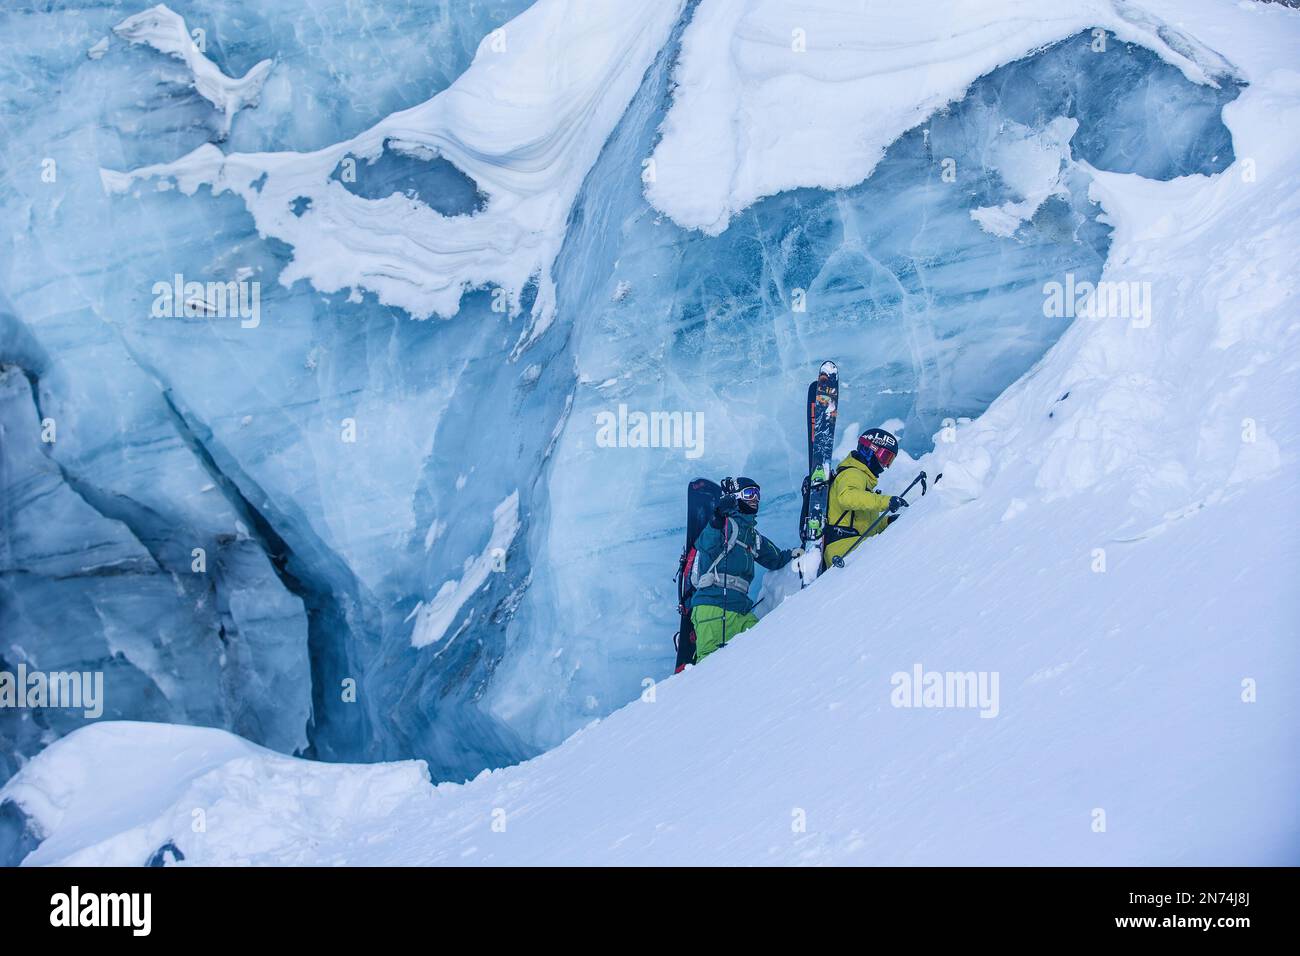 Dos snowboarders y esquiadores profesionales exploran y esquían una grieta / cueva de hielo en lo alto del glaciar Pitztal, Pitztal, Tirol, Austria Foto de stock